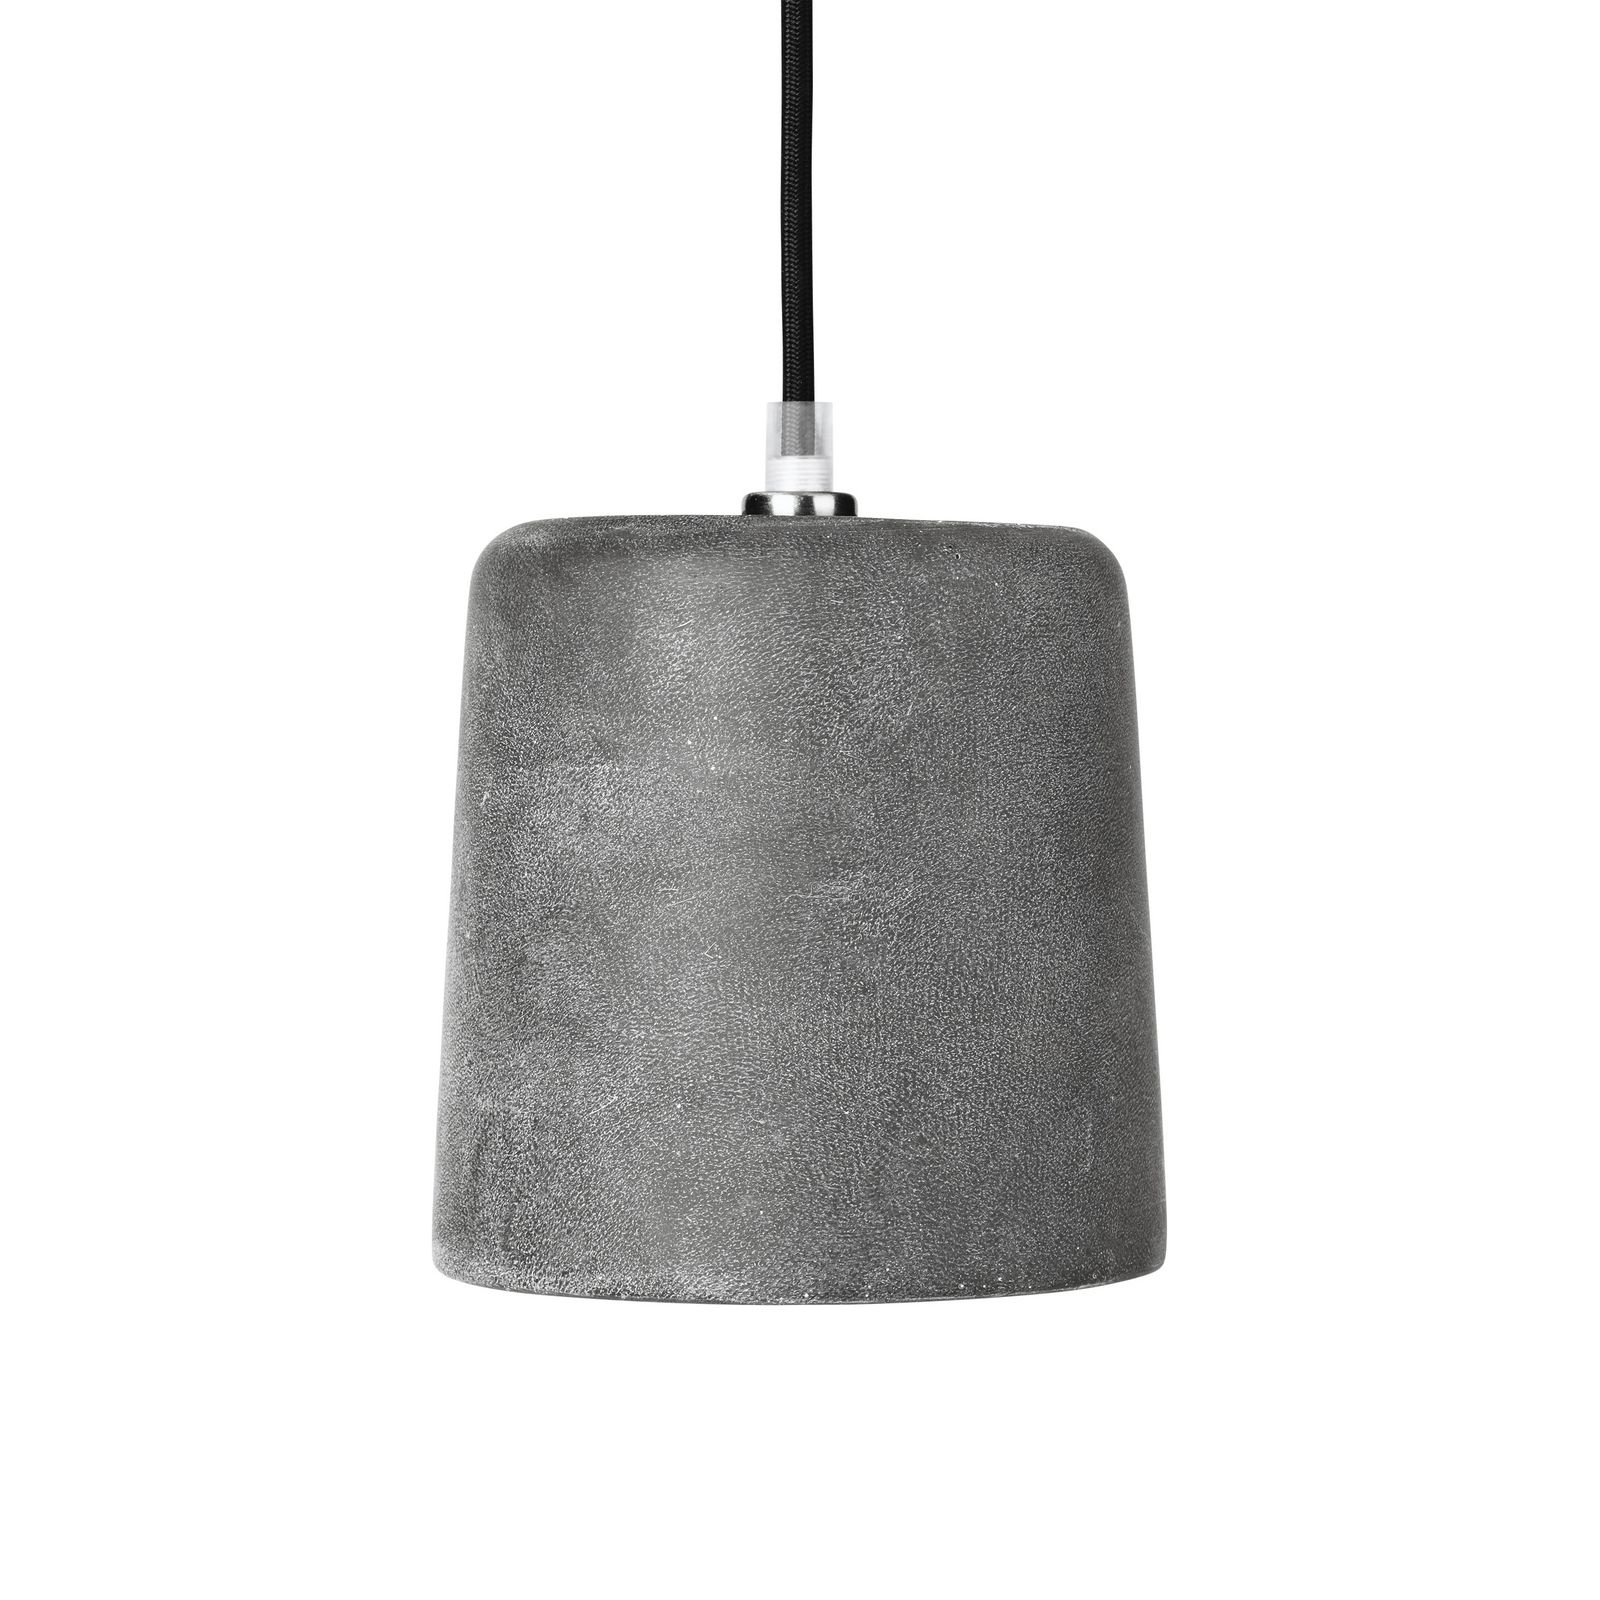 фото Потолочный светильник Broste Conical, цвет: темно-серый, высота 19 см. 14490112